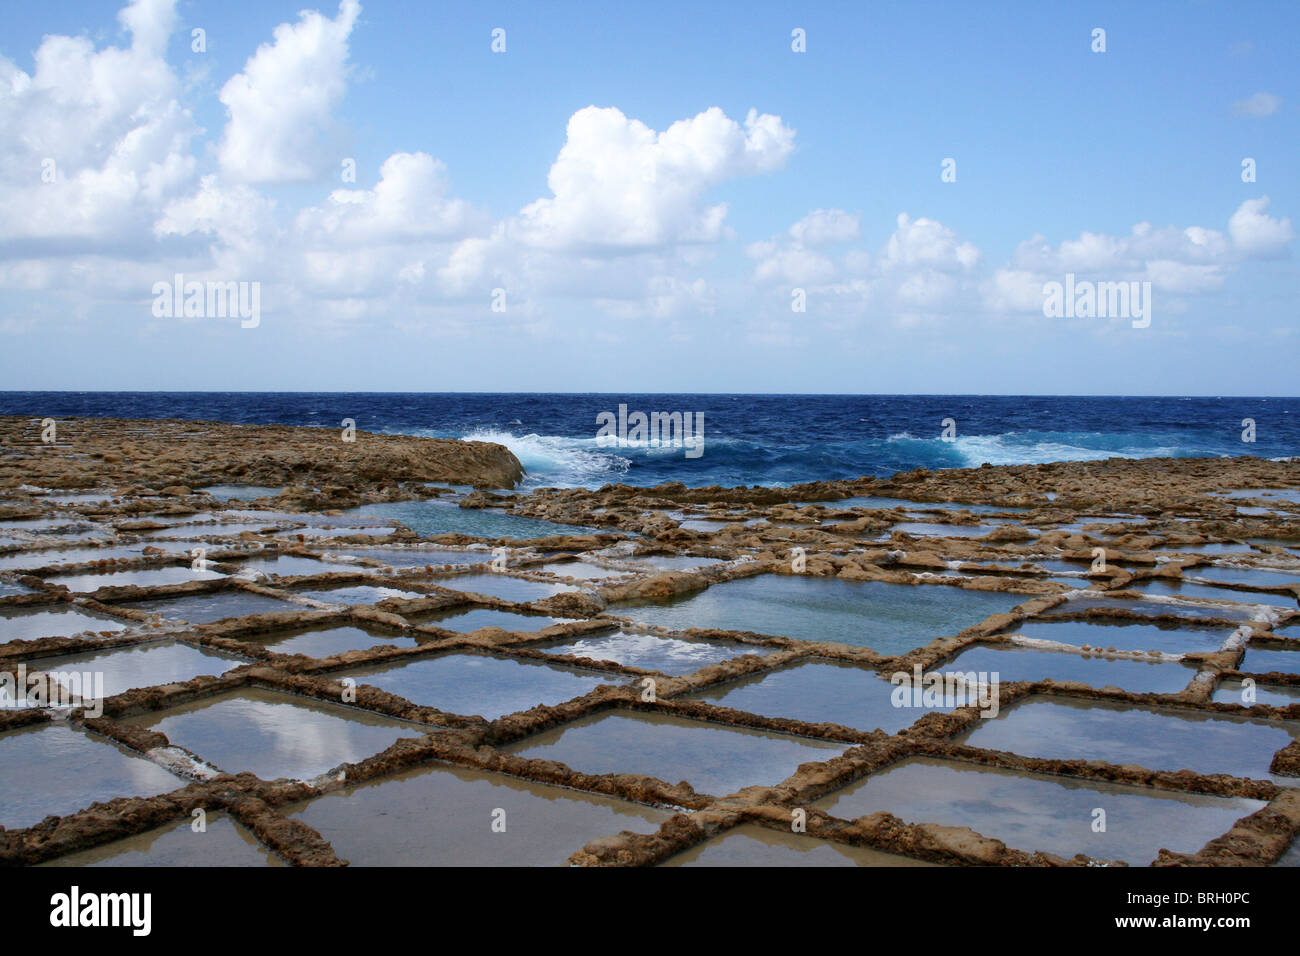 La baie de Marsalforn à Xwieni salines à Gozo au large de Malte Banque D'Images